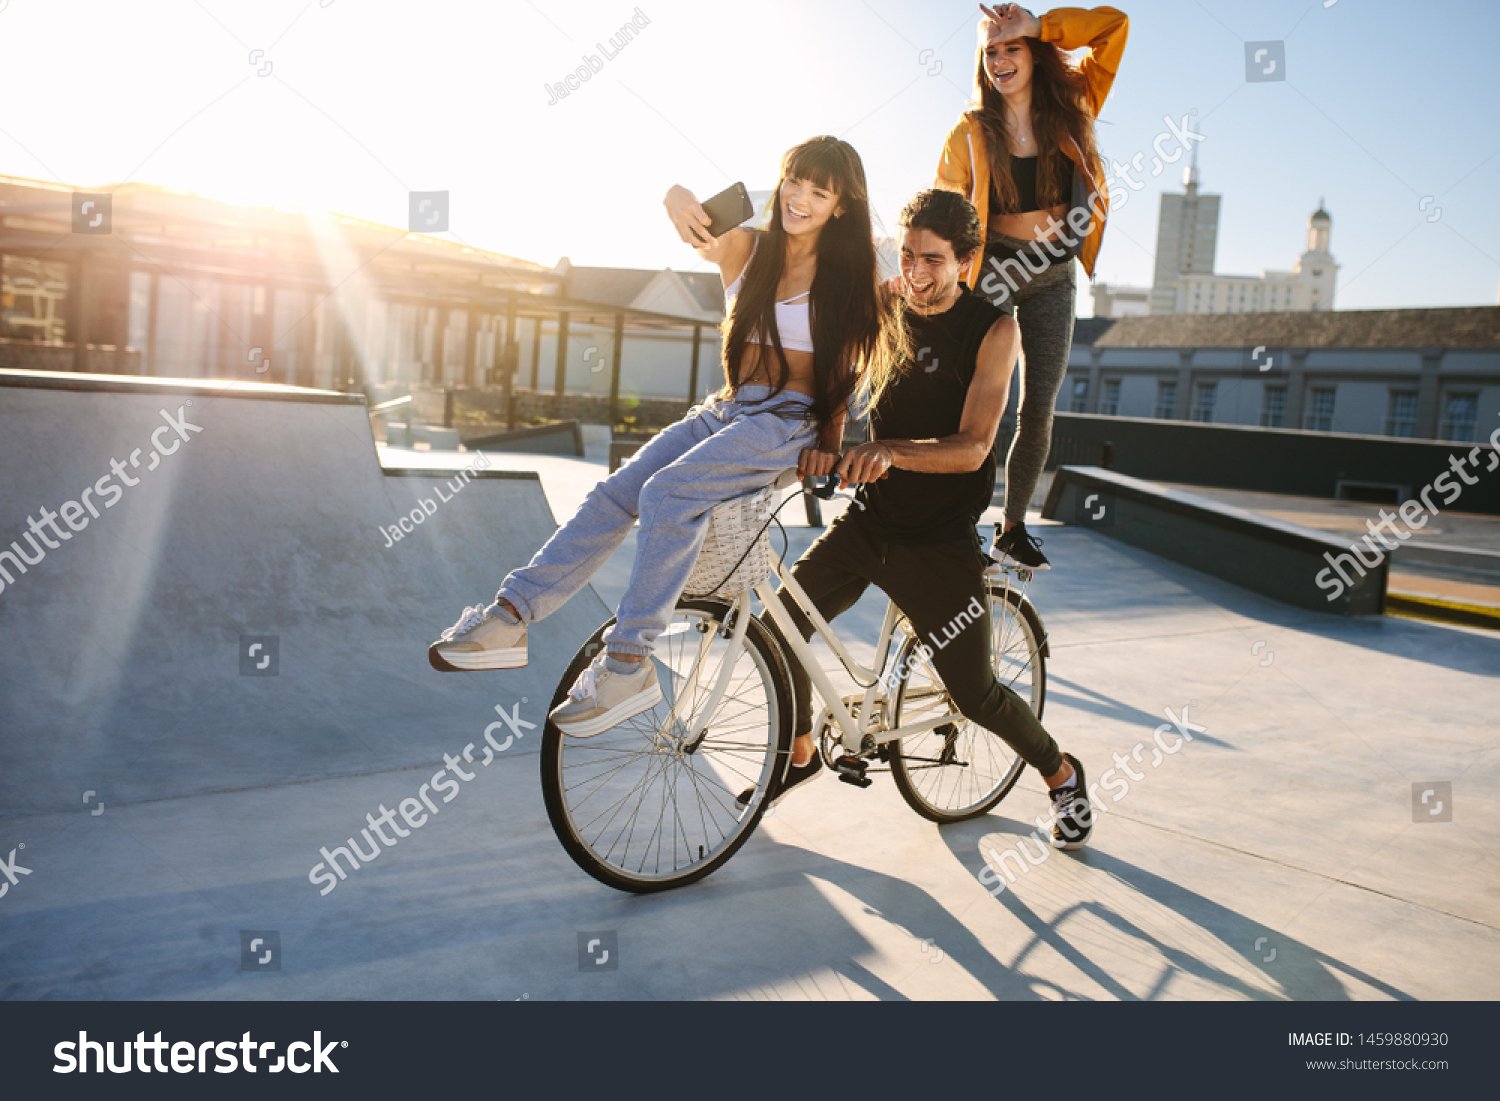 girl sitting on bike